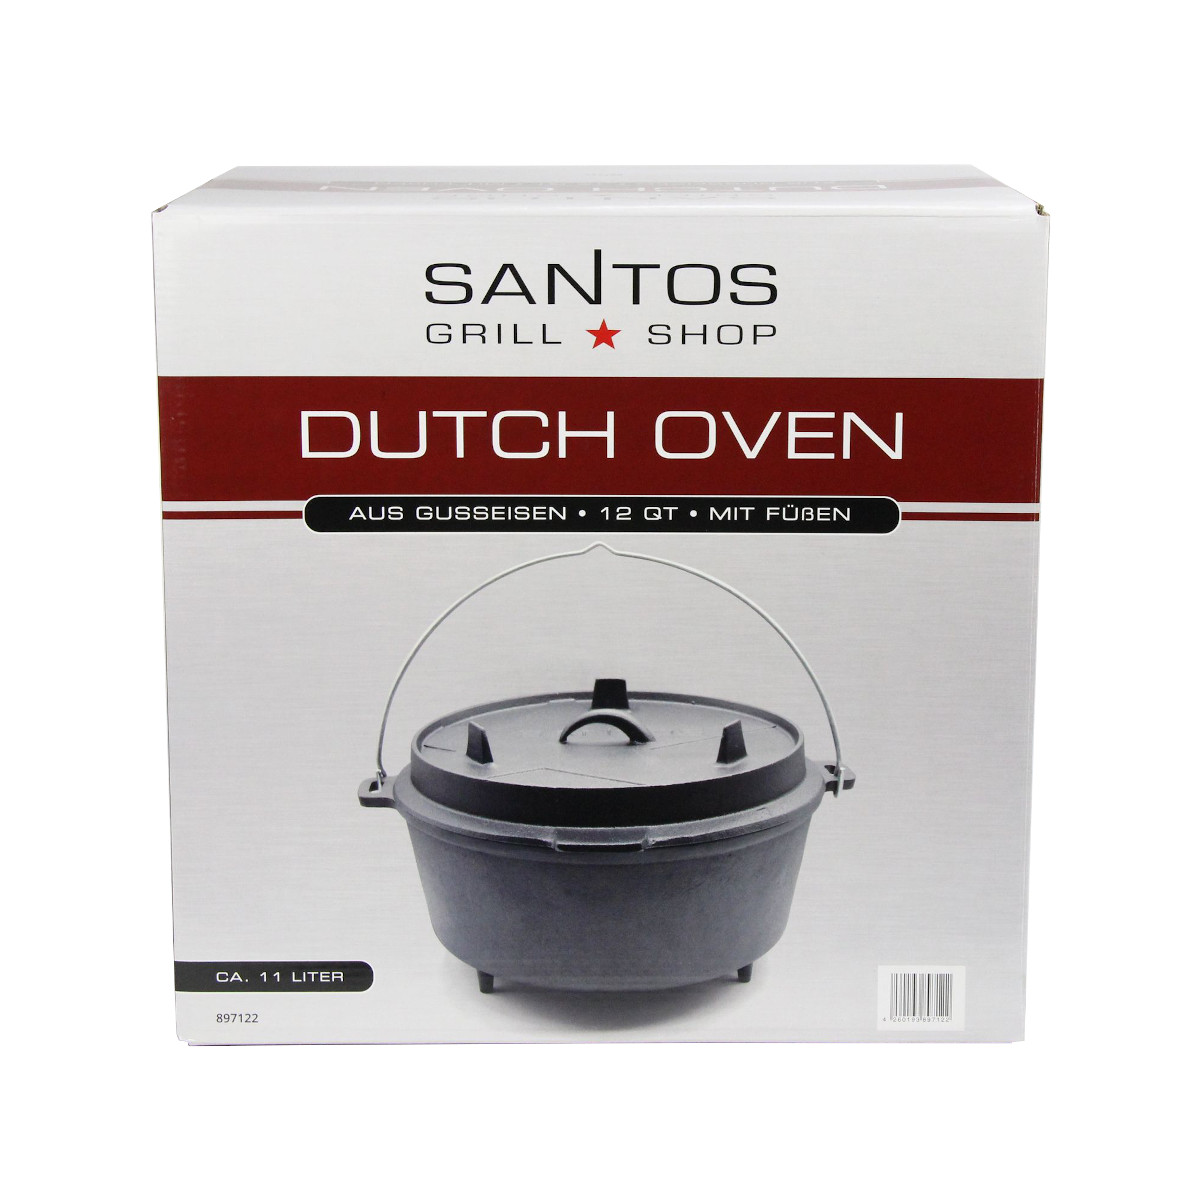 SANTOS Dutch Oven 12qt mit Füßen